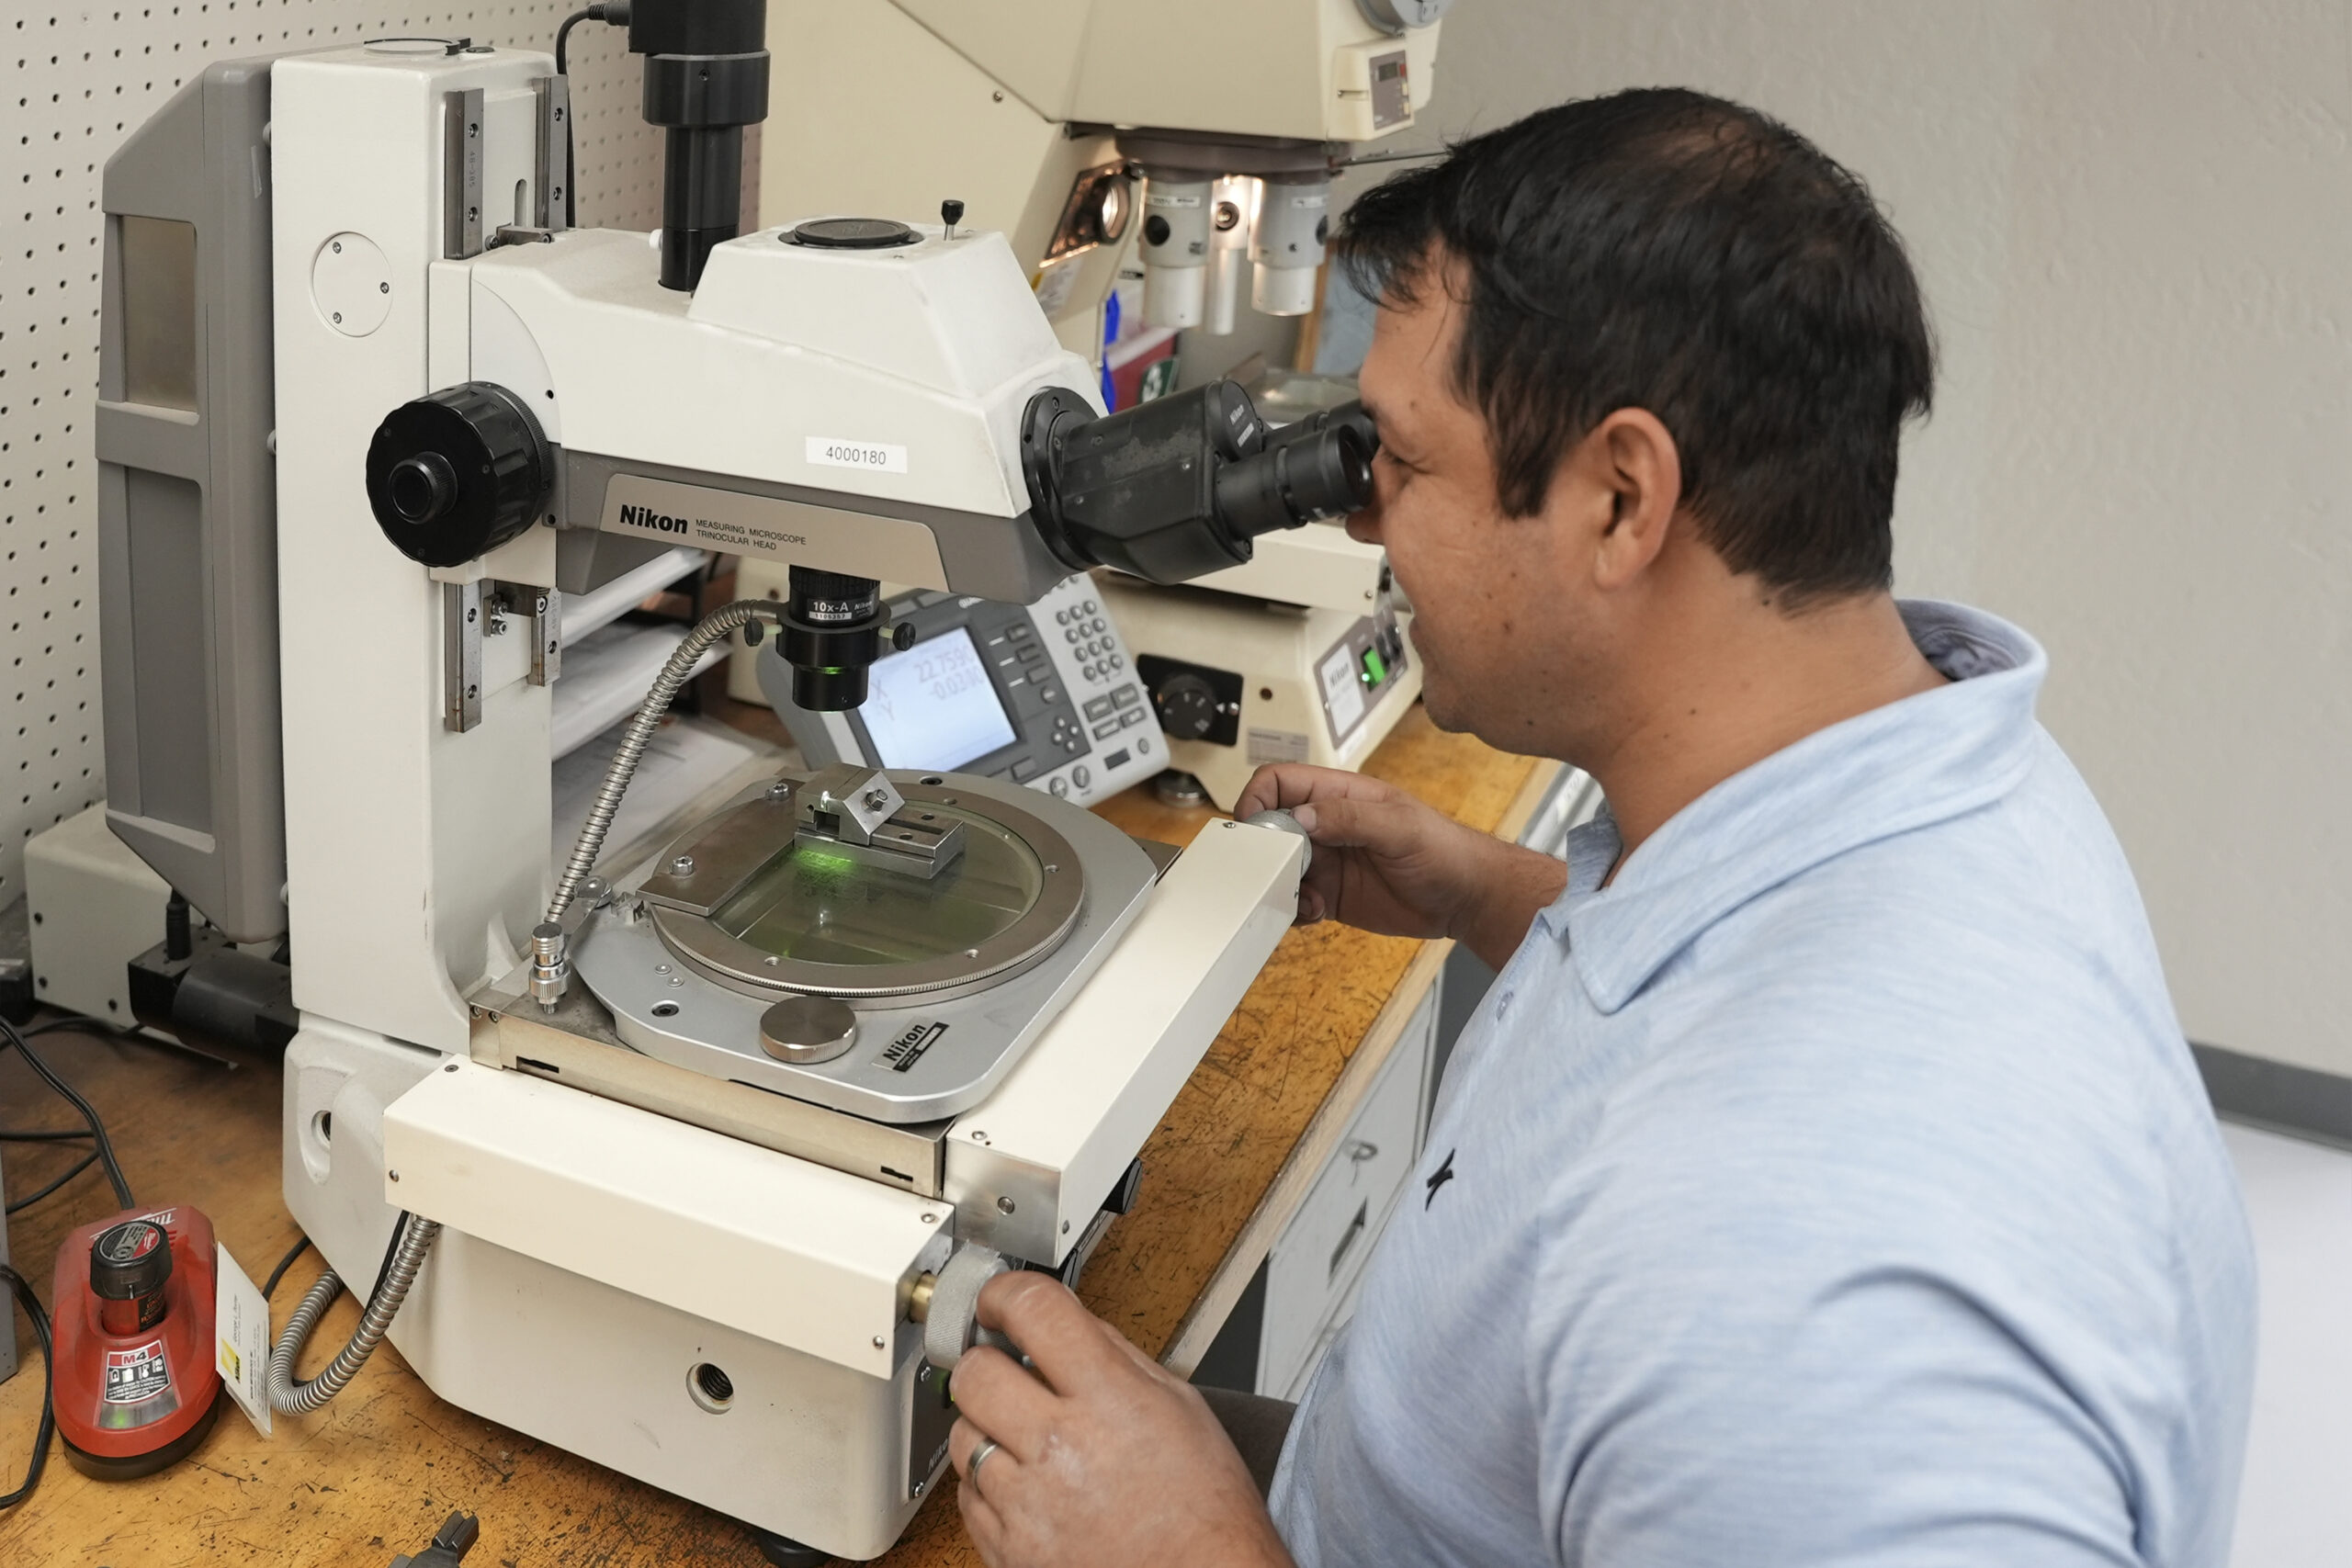 ニコンの測定顕微鏡を使用してプレス加工部品の光学検査を実施する技術者